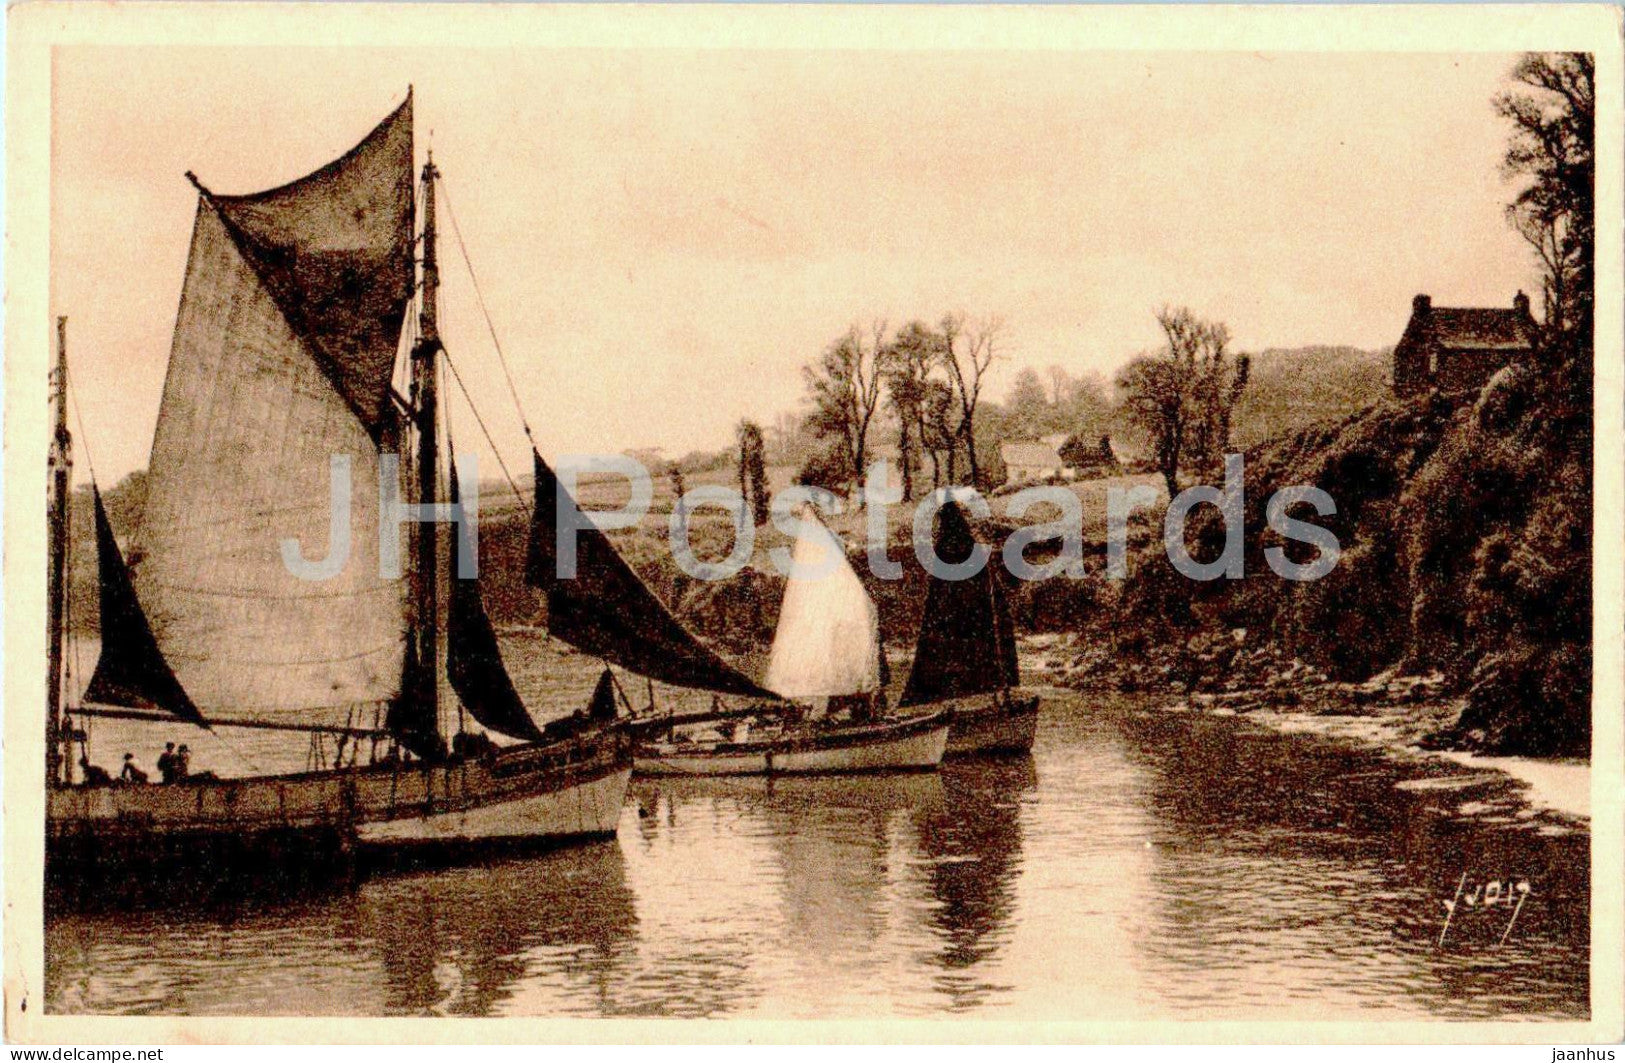 Douarnenez - Bateaux de Peche dans le Port - boat - ship - 19 - old postcard - France - unused - JH Postcards